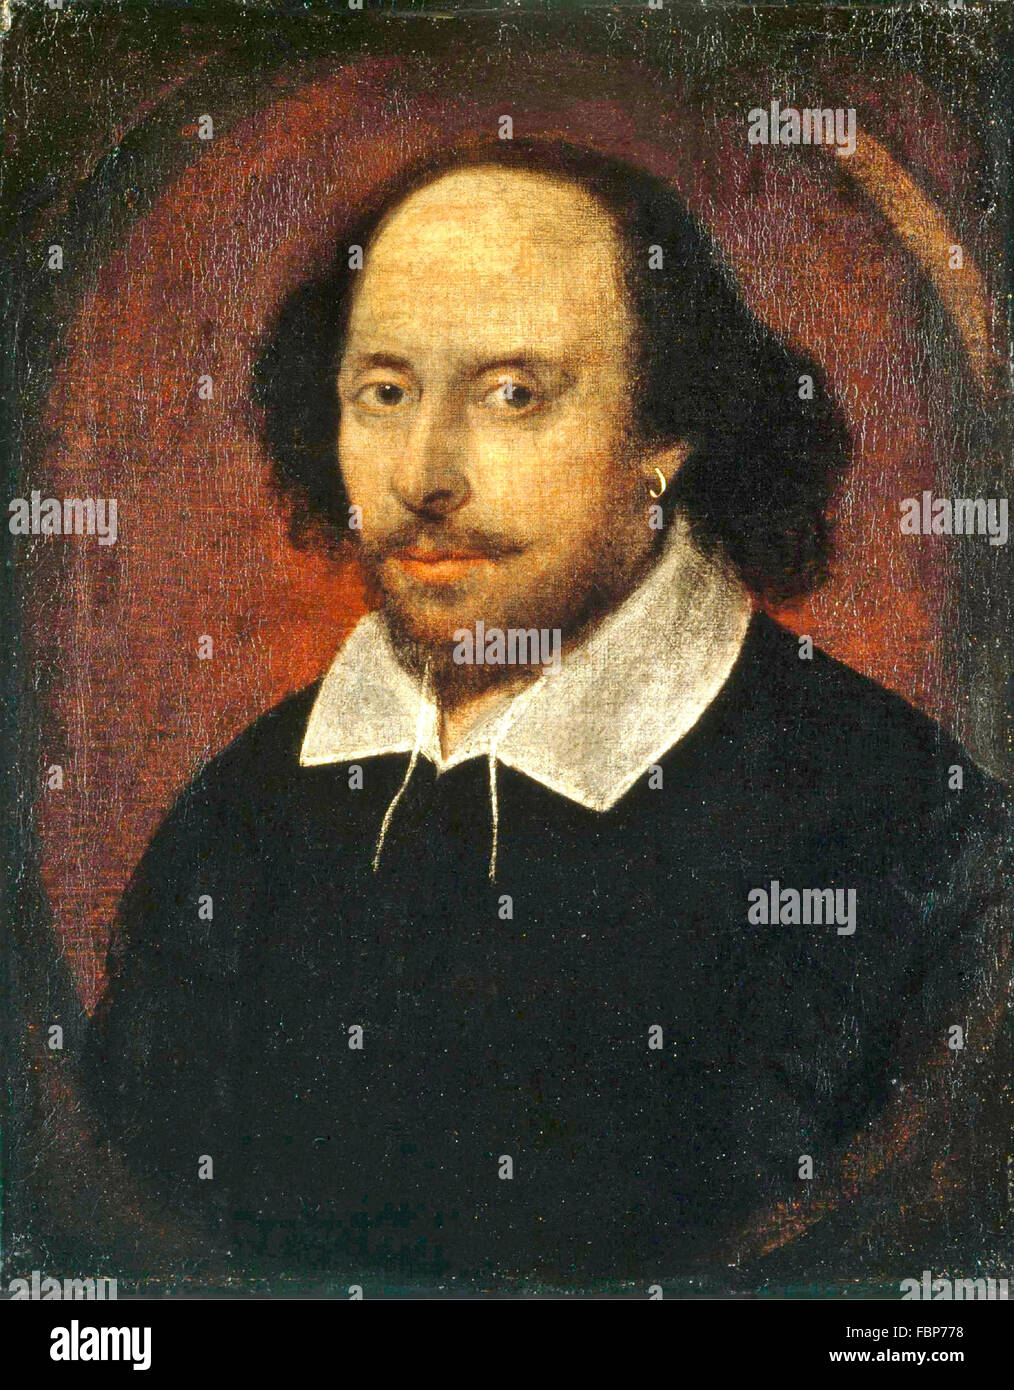 William Shakespearer. Le 'Portrait' Chandos de William Shakespeare, par John Taylor ( ?), 1610 Banque D'Images